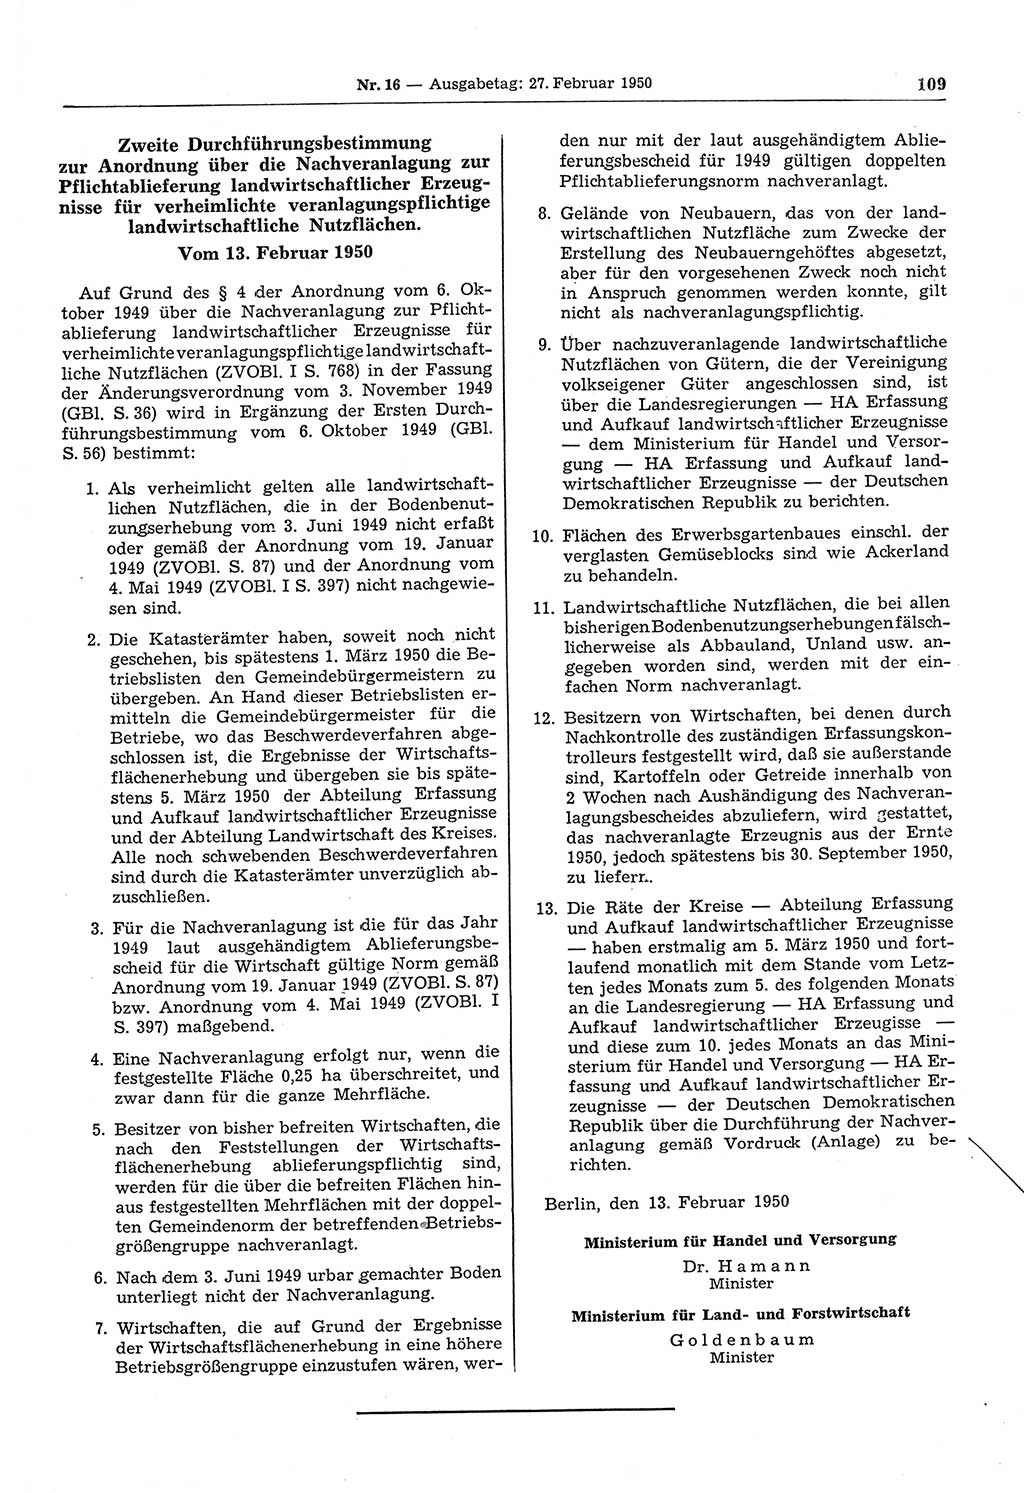 Gesetzblatt (GBl.) der Deutschen Demokratischen Republik (DDR) 1950, Seite 109 (GBl. DDR 1950, S. 109)